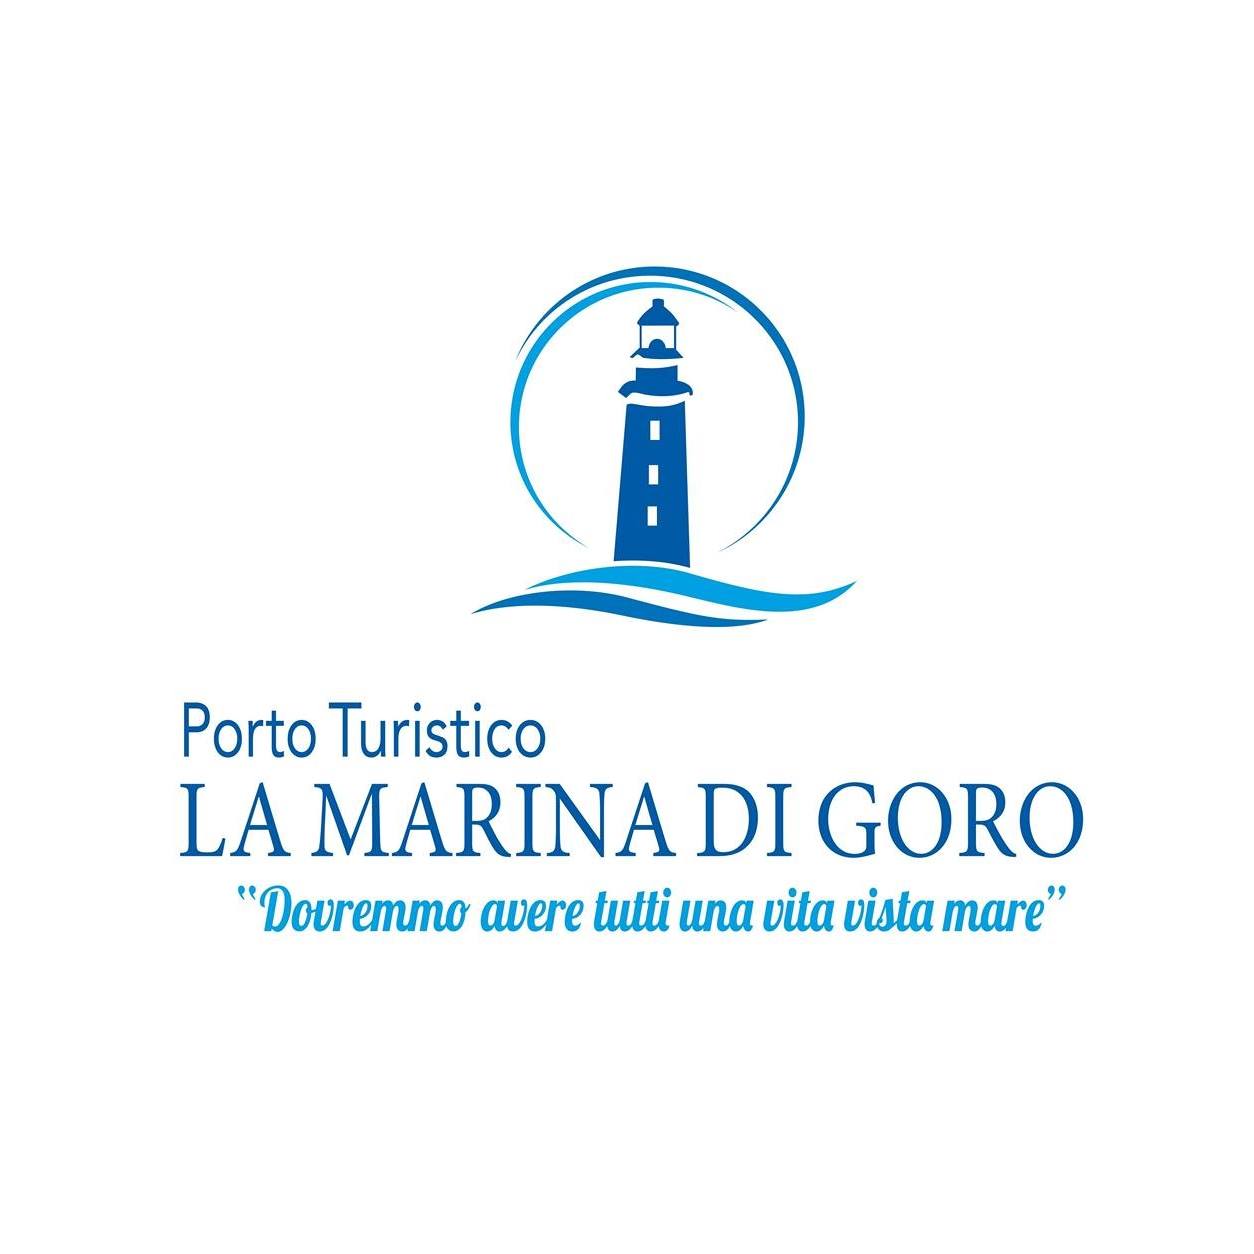 Marina Logo